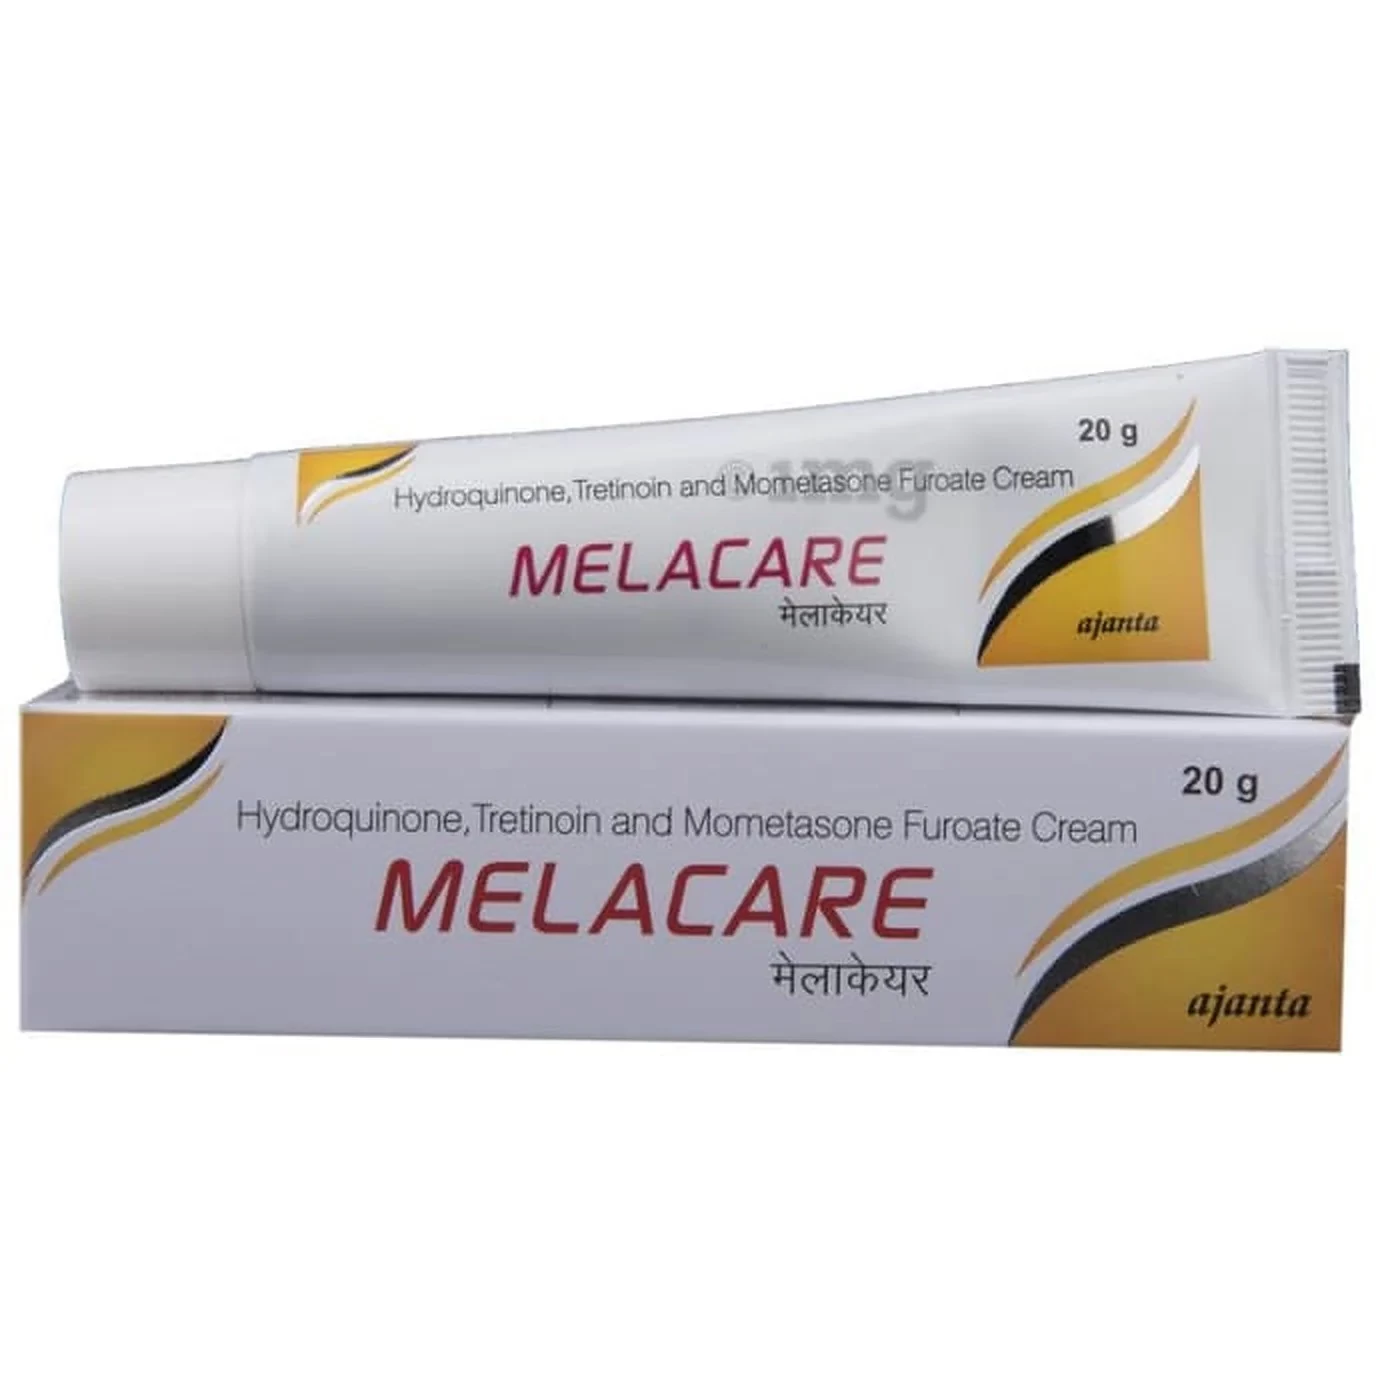 Melacare Hydroquinone Tretinoin Mometasone Furoate Cream - 25g